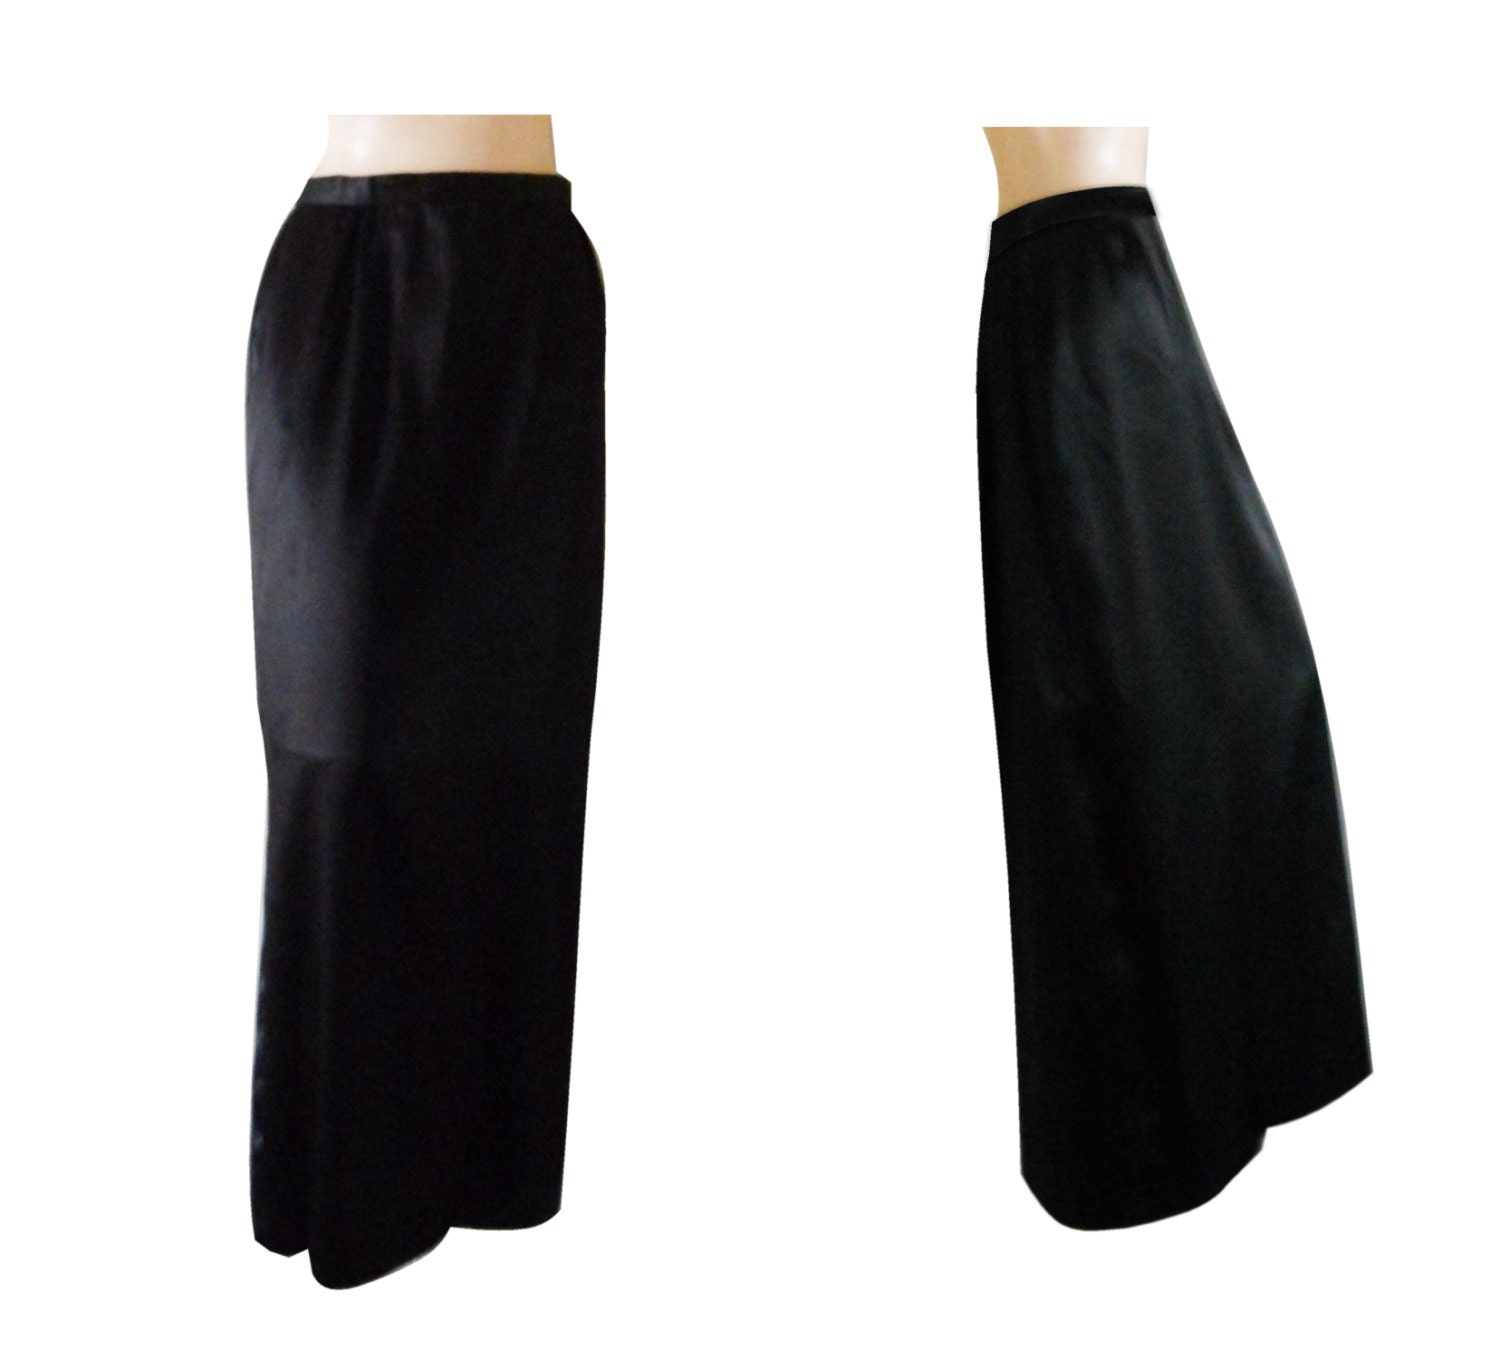 Black Satin Skirt Long Satin Skirt Black Maxi Skirt Formal